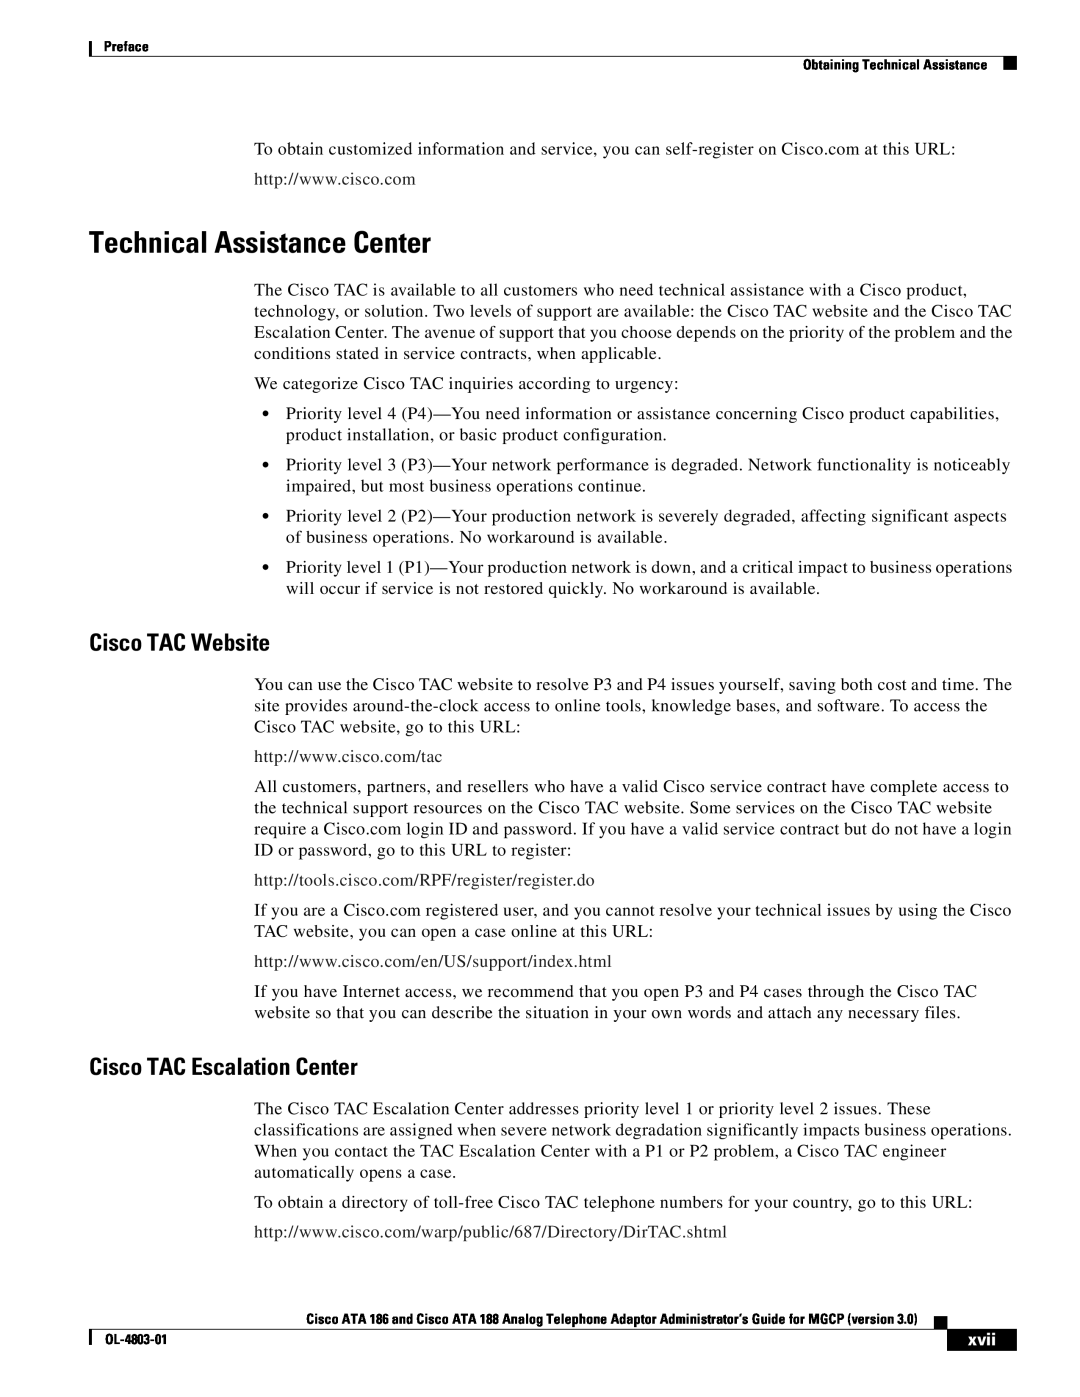 Cisco Systems ATA 188, ATA 186 manual Technical Assistance Center, Cisco TAC Website, Cisco TAC Escalation Center, xvii 